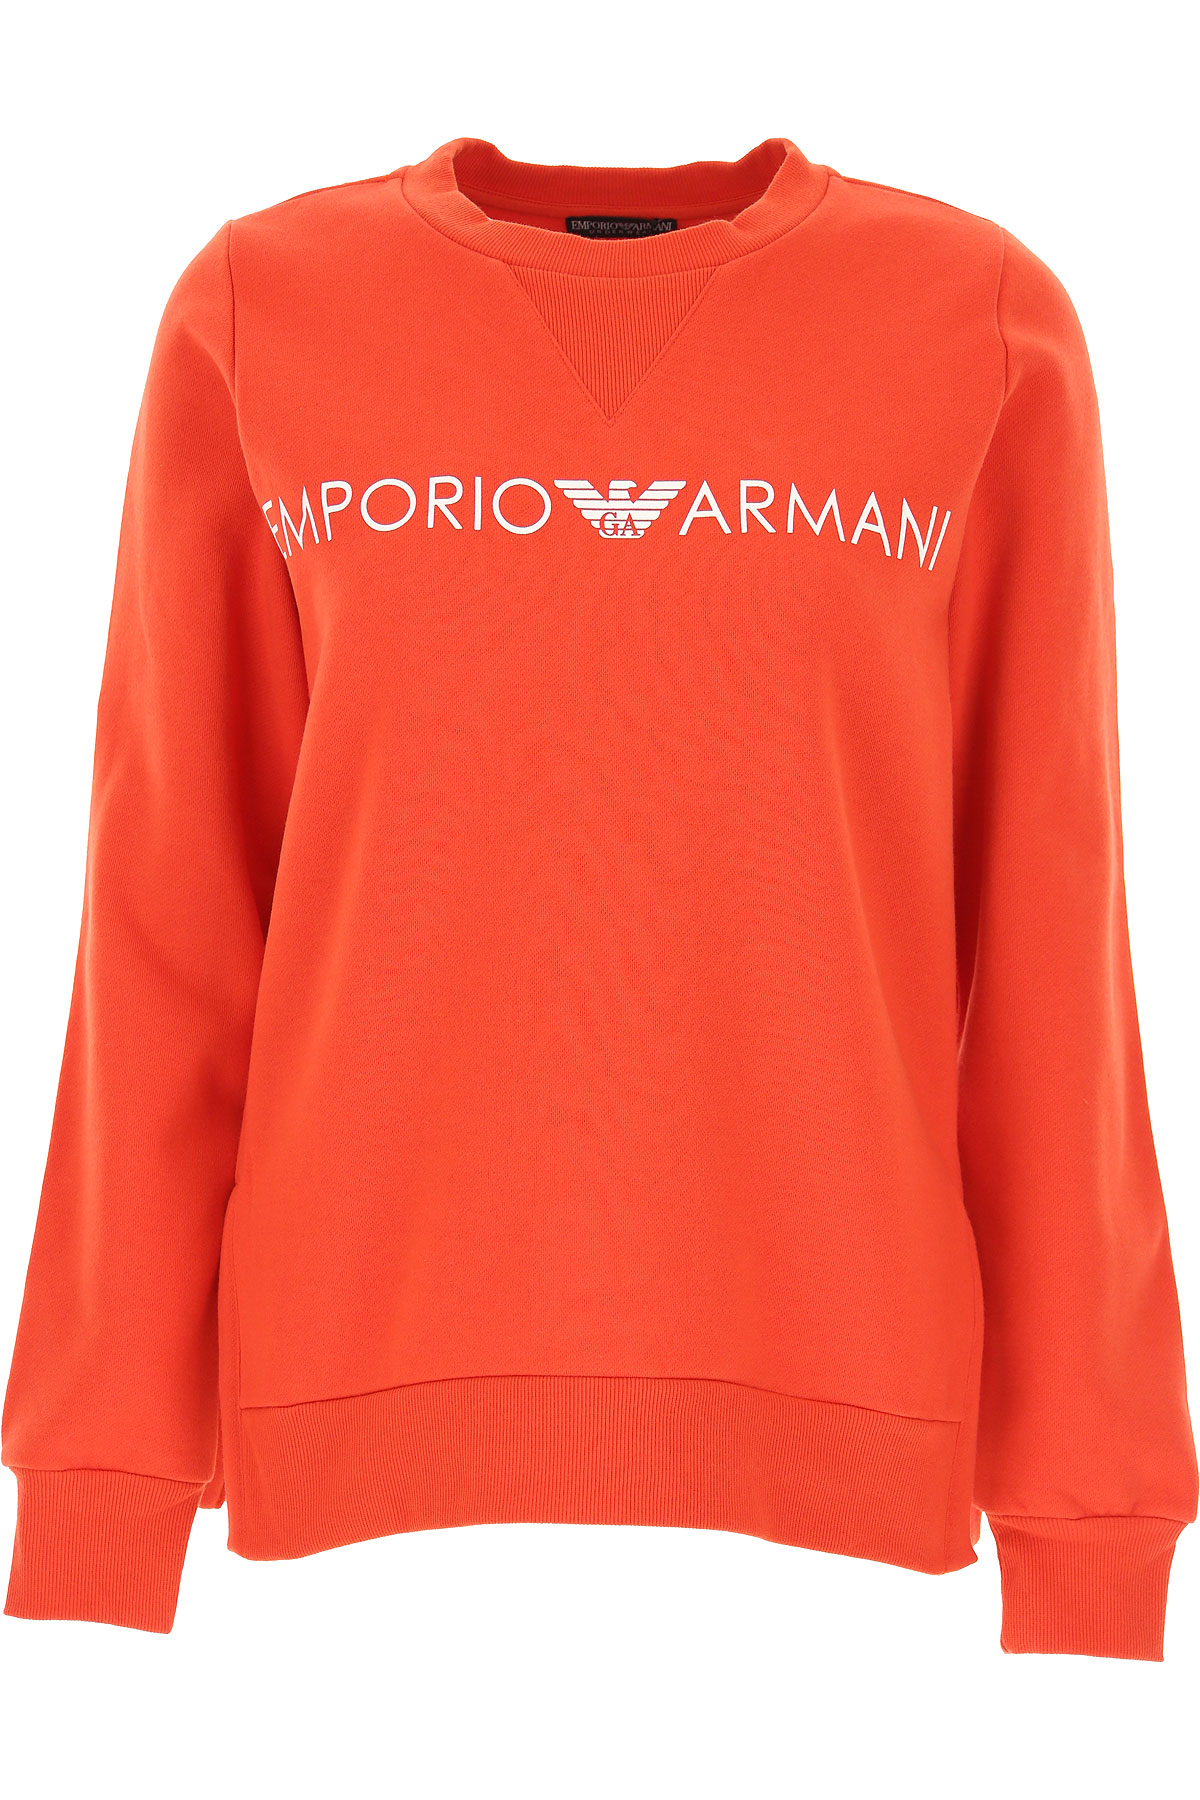 Emporio Armani Sweatshirt für Damen, Kapuzenpulli, Hoodie, Sweats Günstig im Sale, Rot, Baumwolle, 2017, 38 40 44 46 M